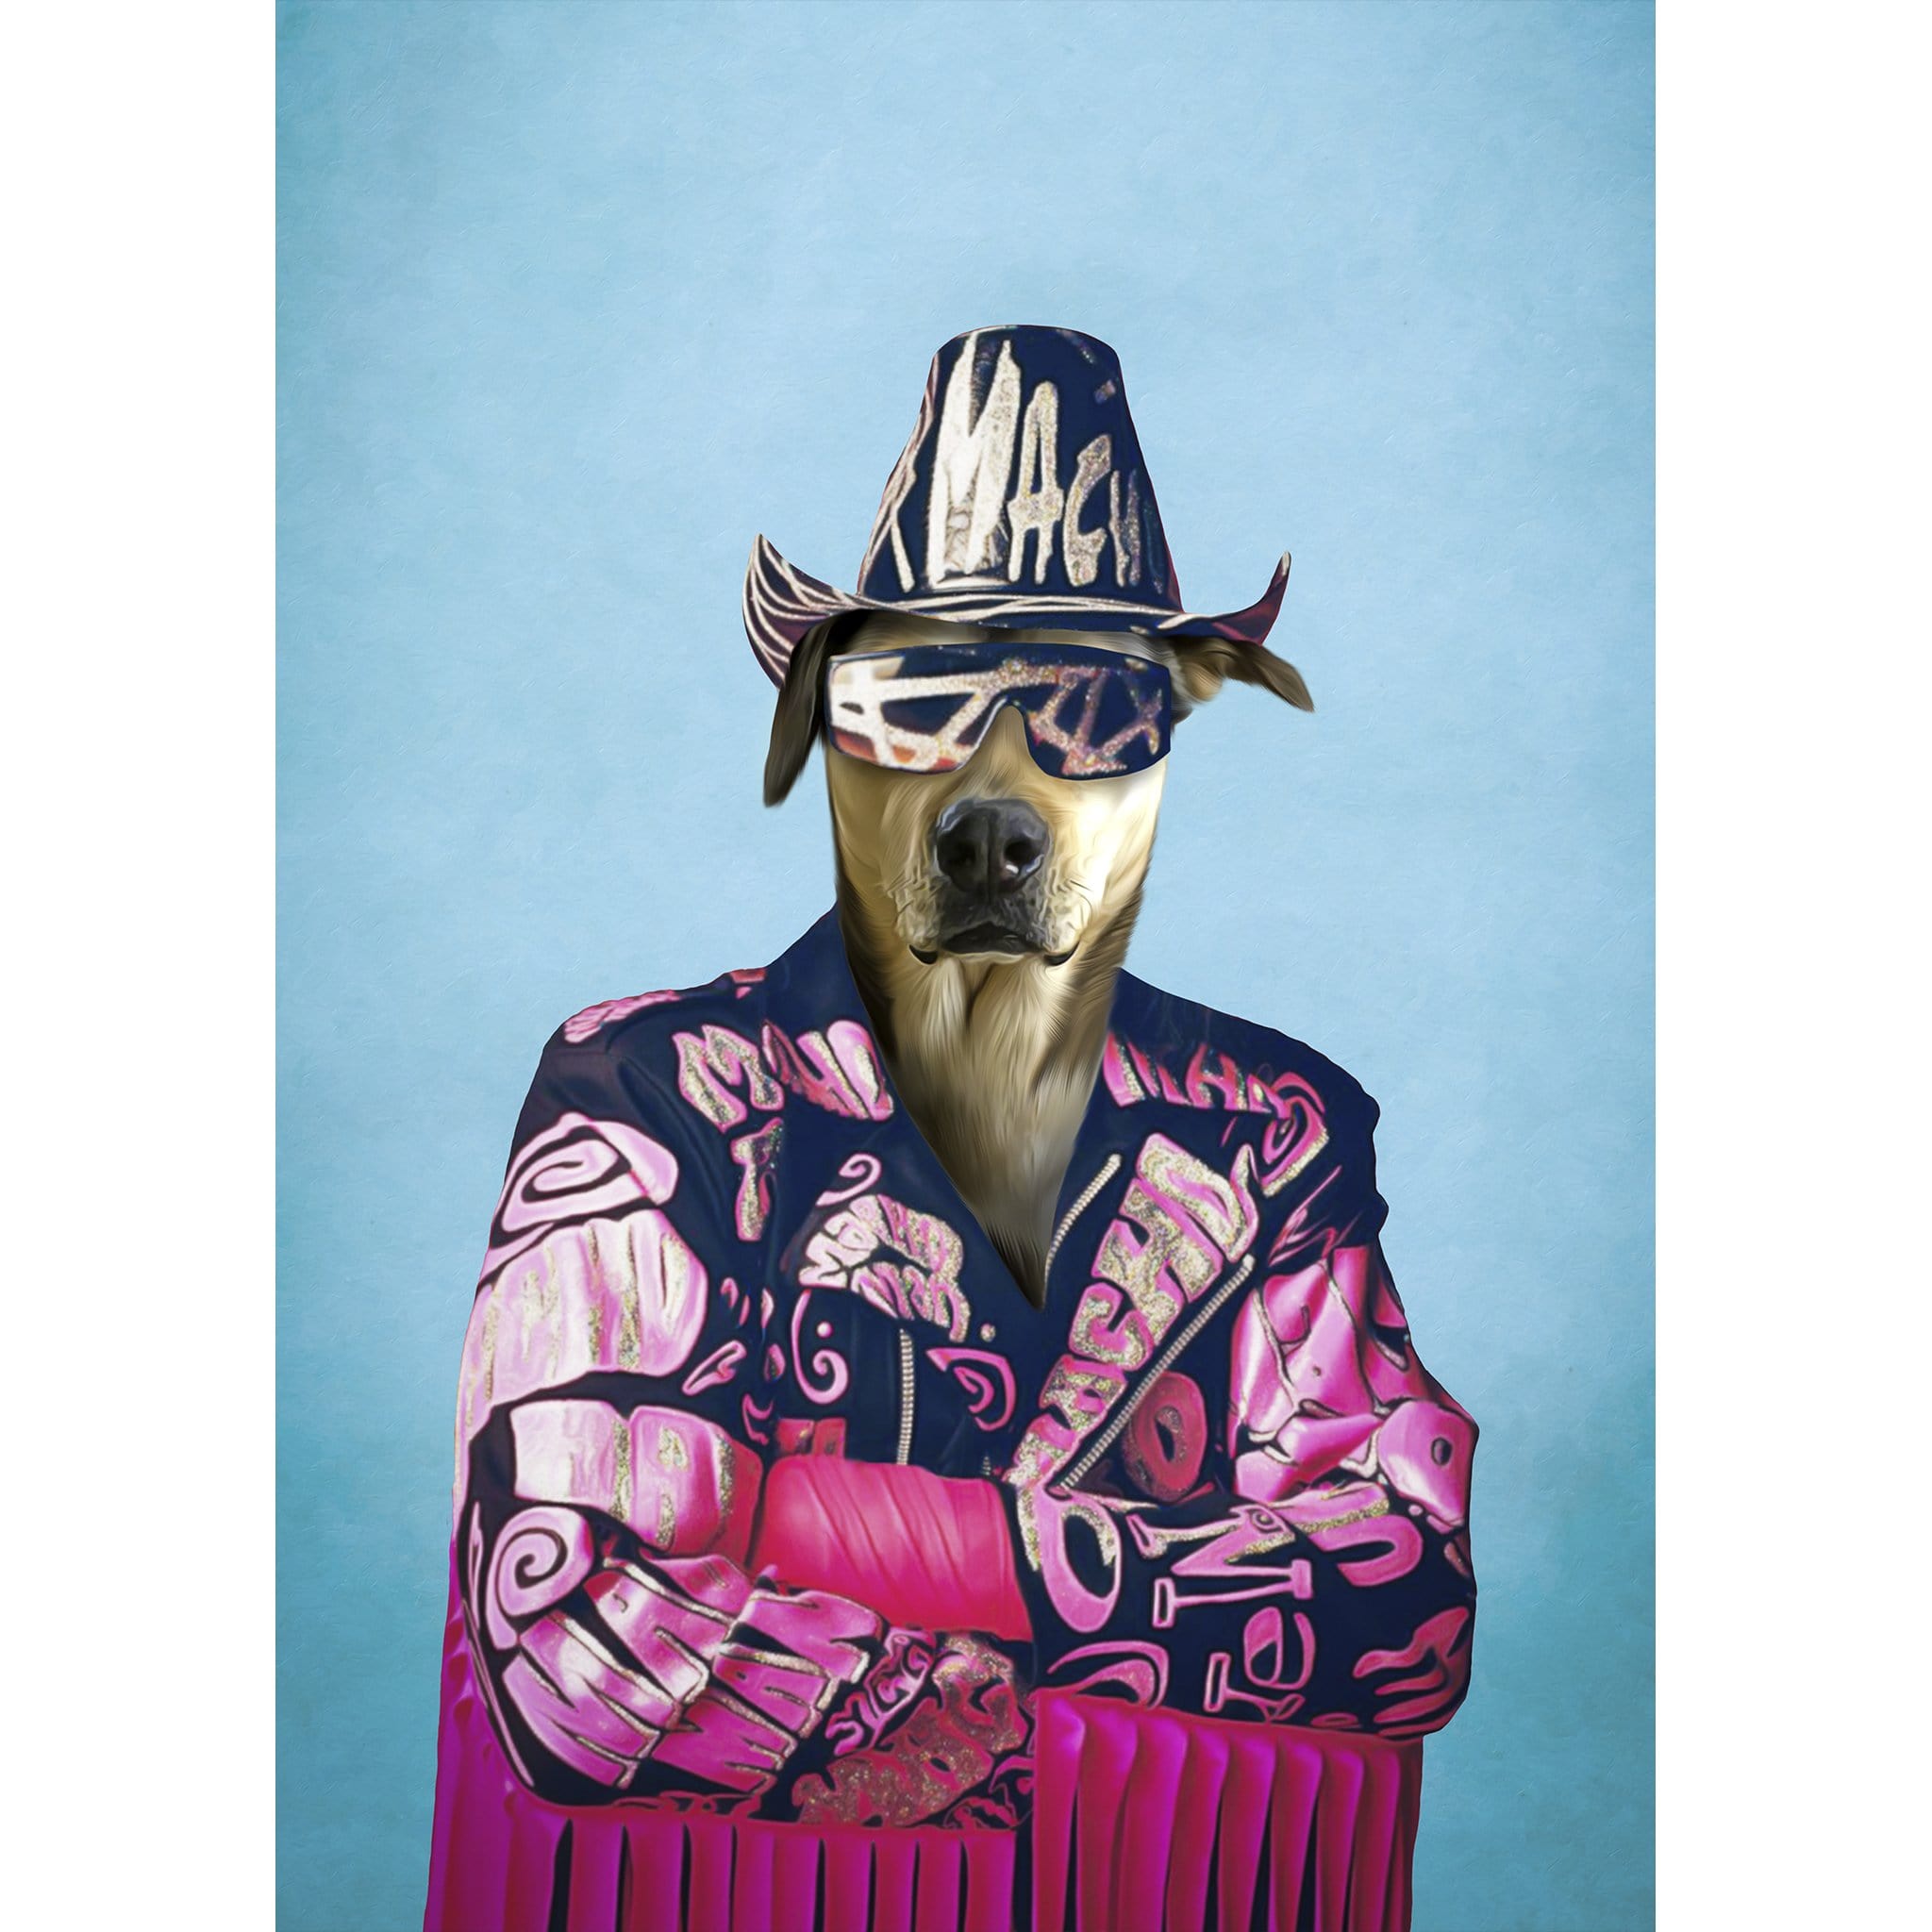 &#39;Macho Man Randy Dogger&#39; Digital Portrait